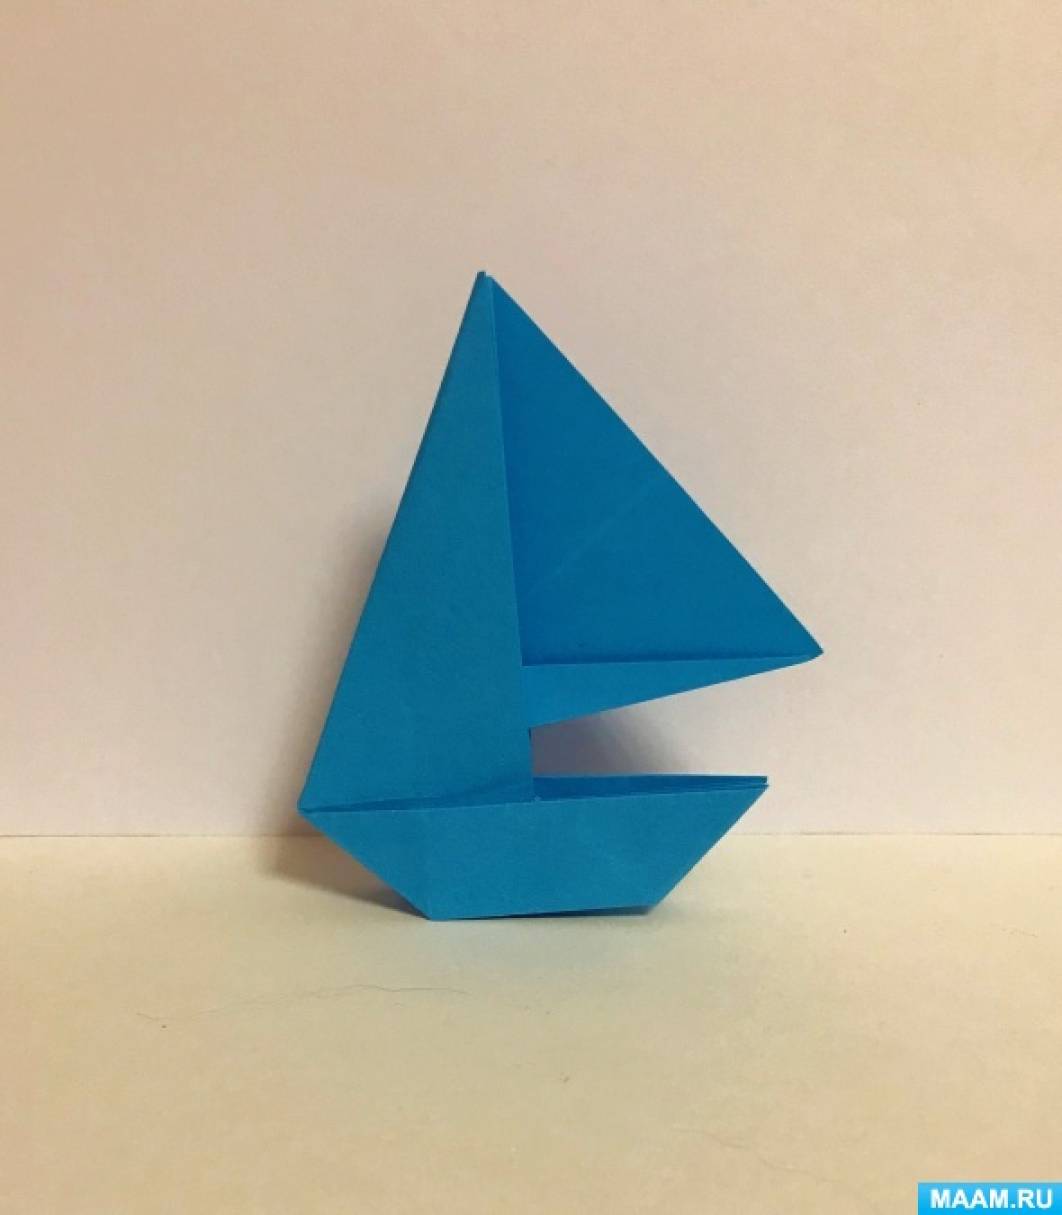 Кораблики из бумаги в стиле оригами: пароход, лодка, катер или яхта